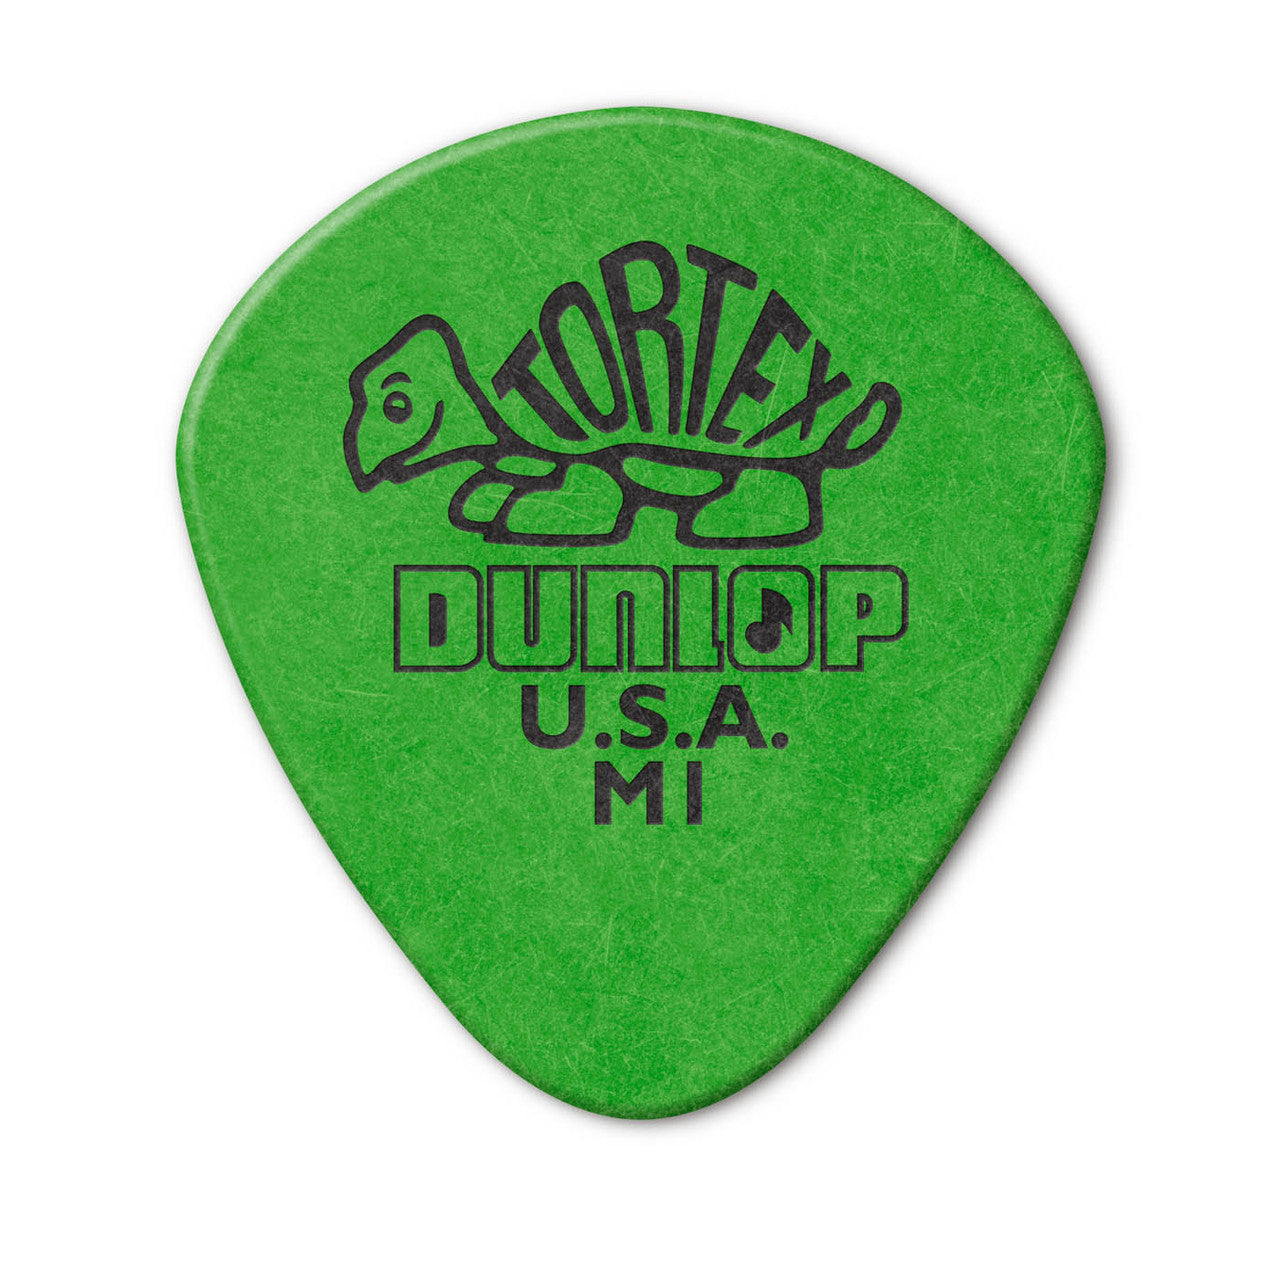 Jim Dunlop M1 Tortex Jazz Green 6-Pack of Picks